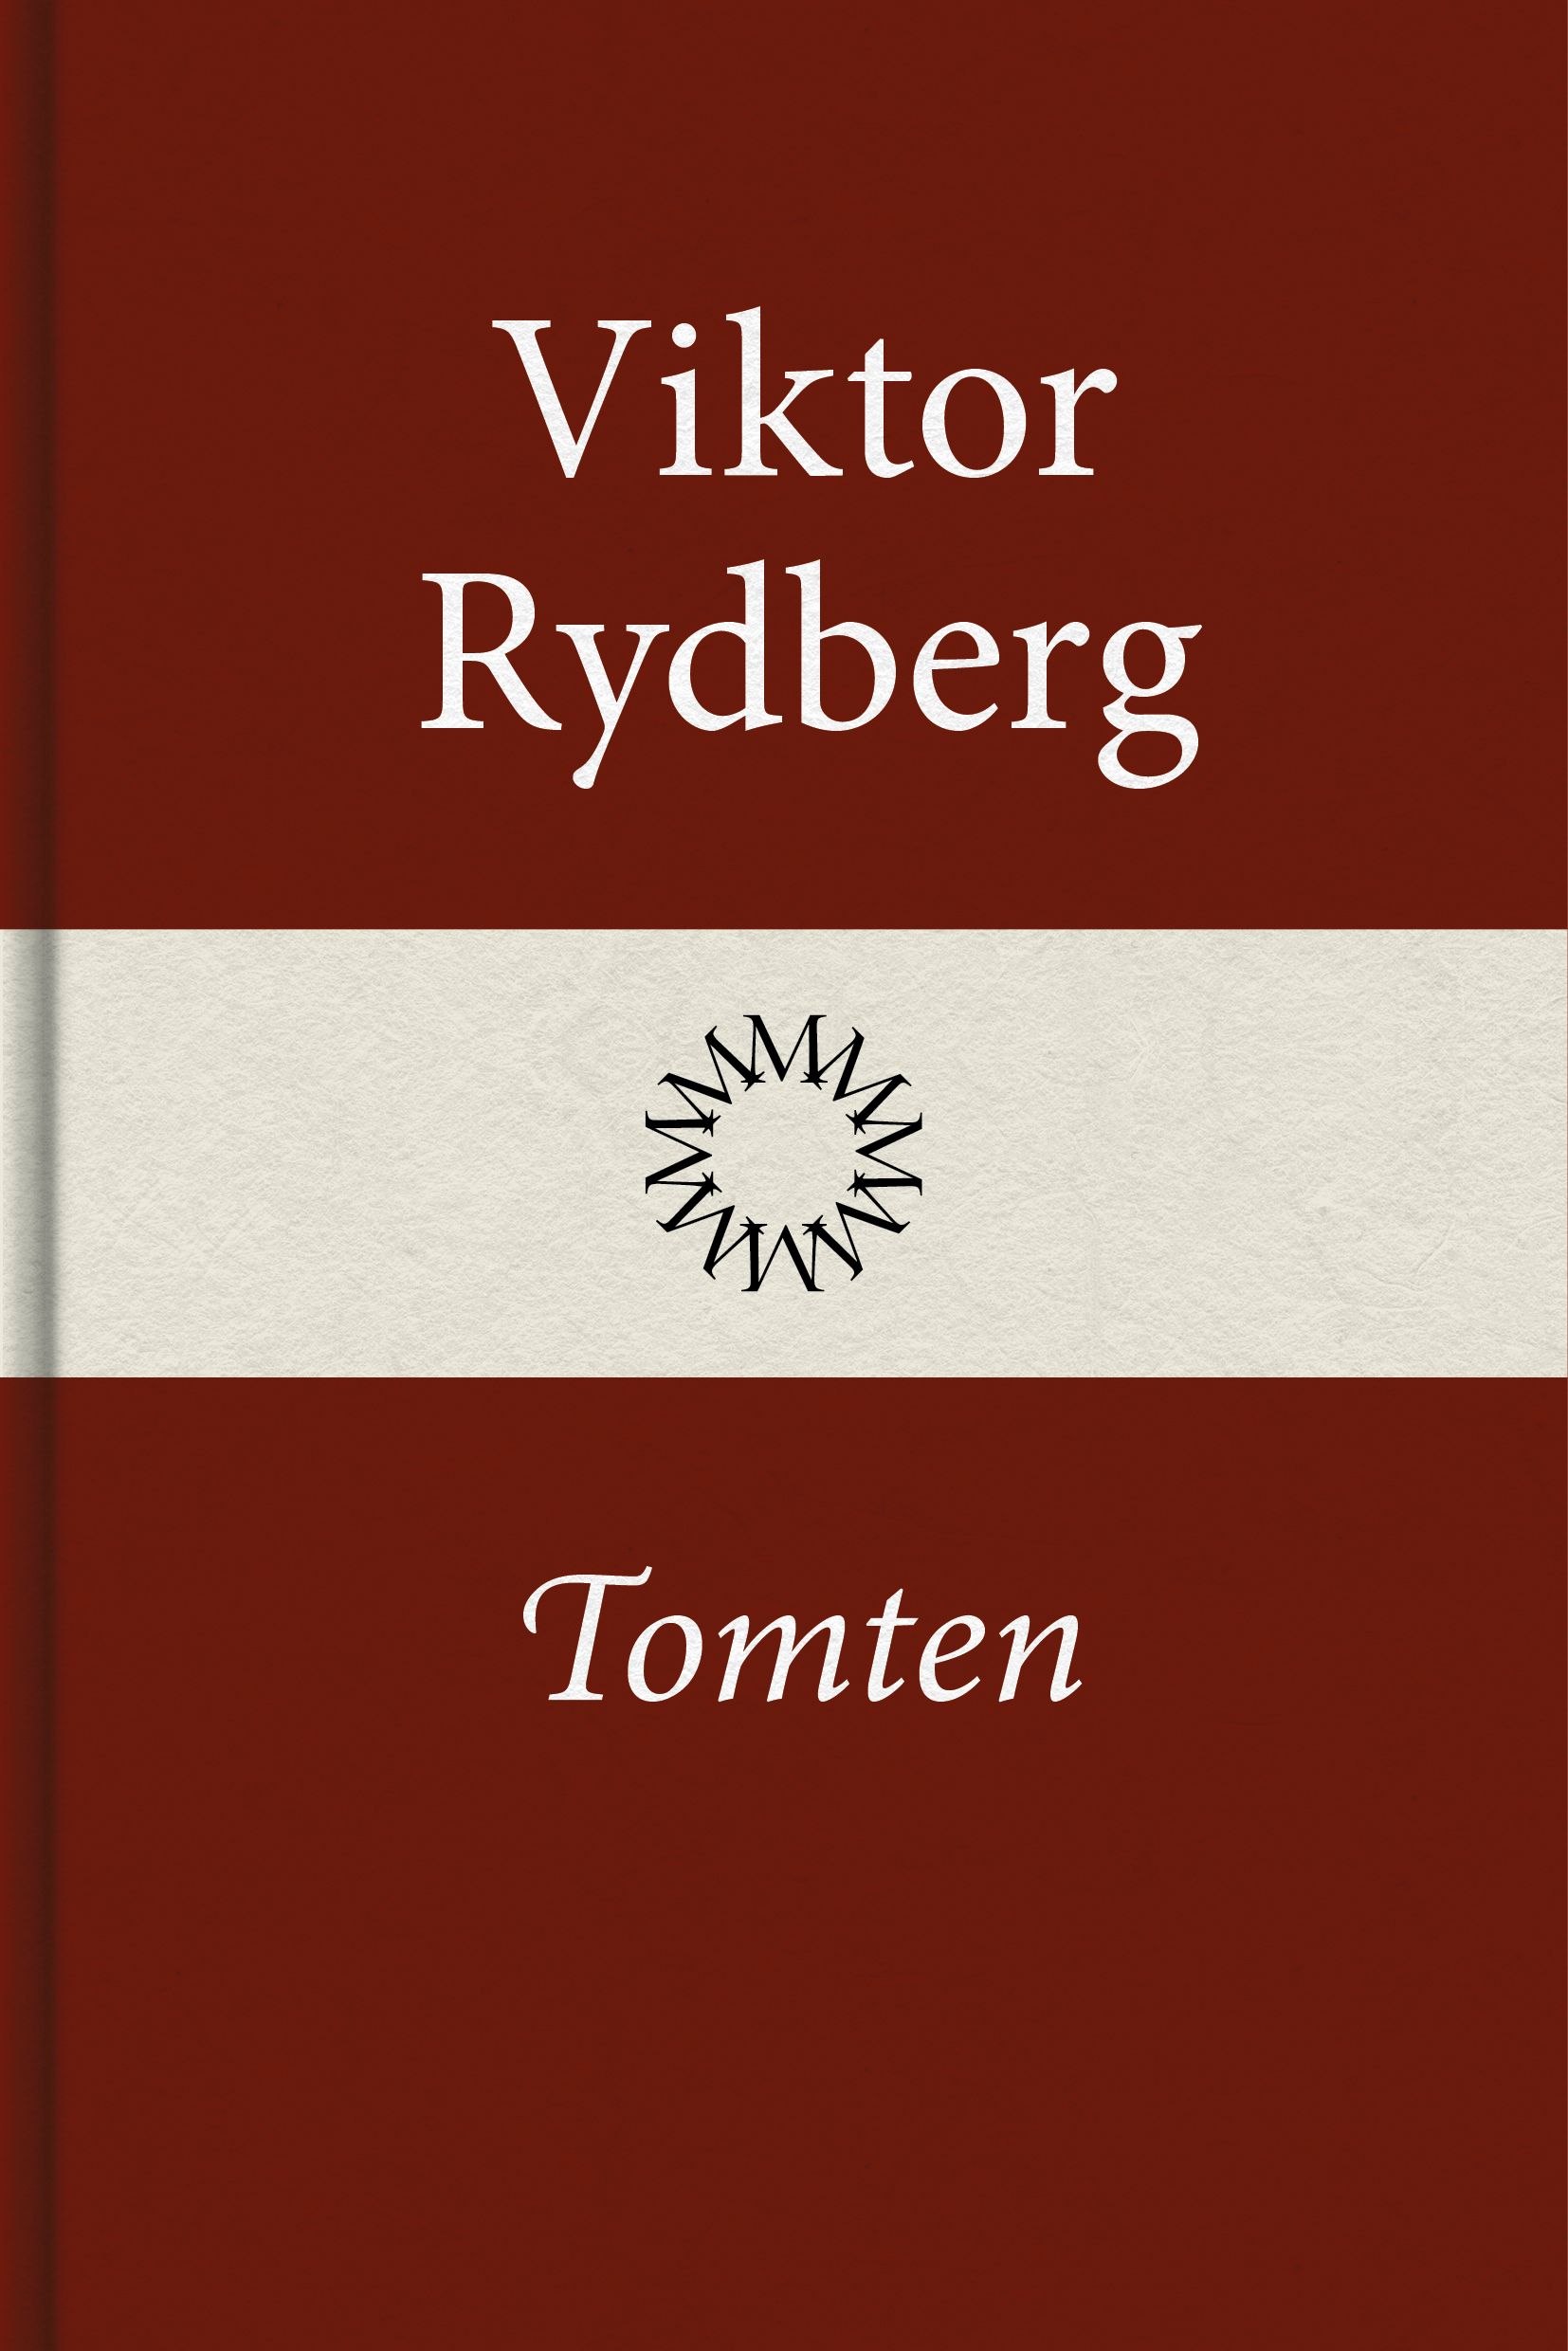 Tomten, e-bog af Viktor Rydberg